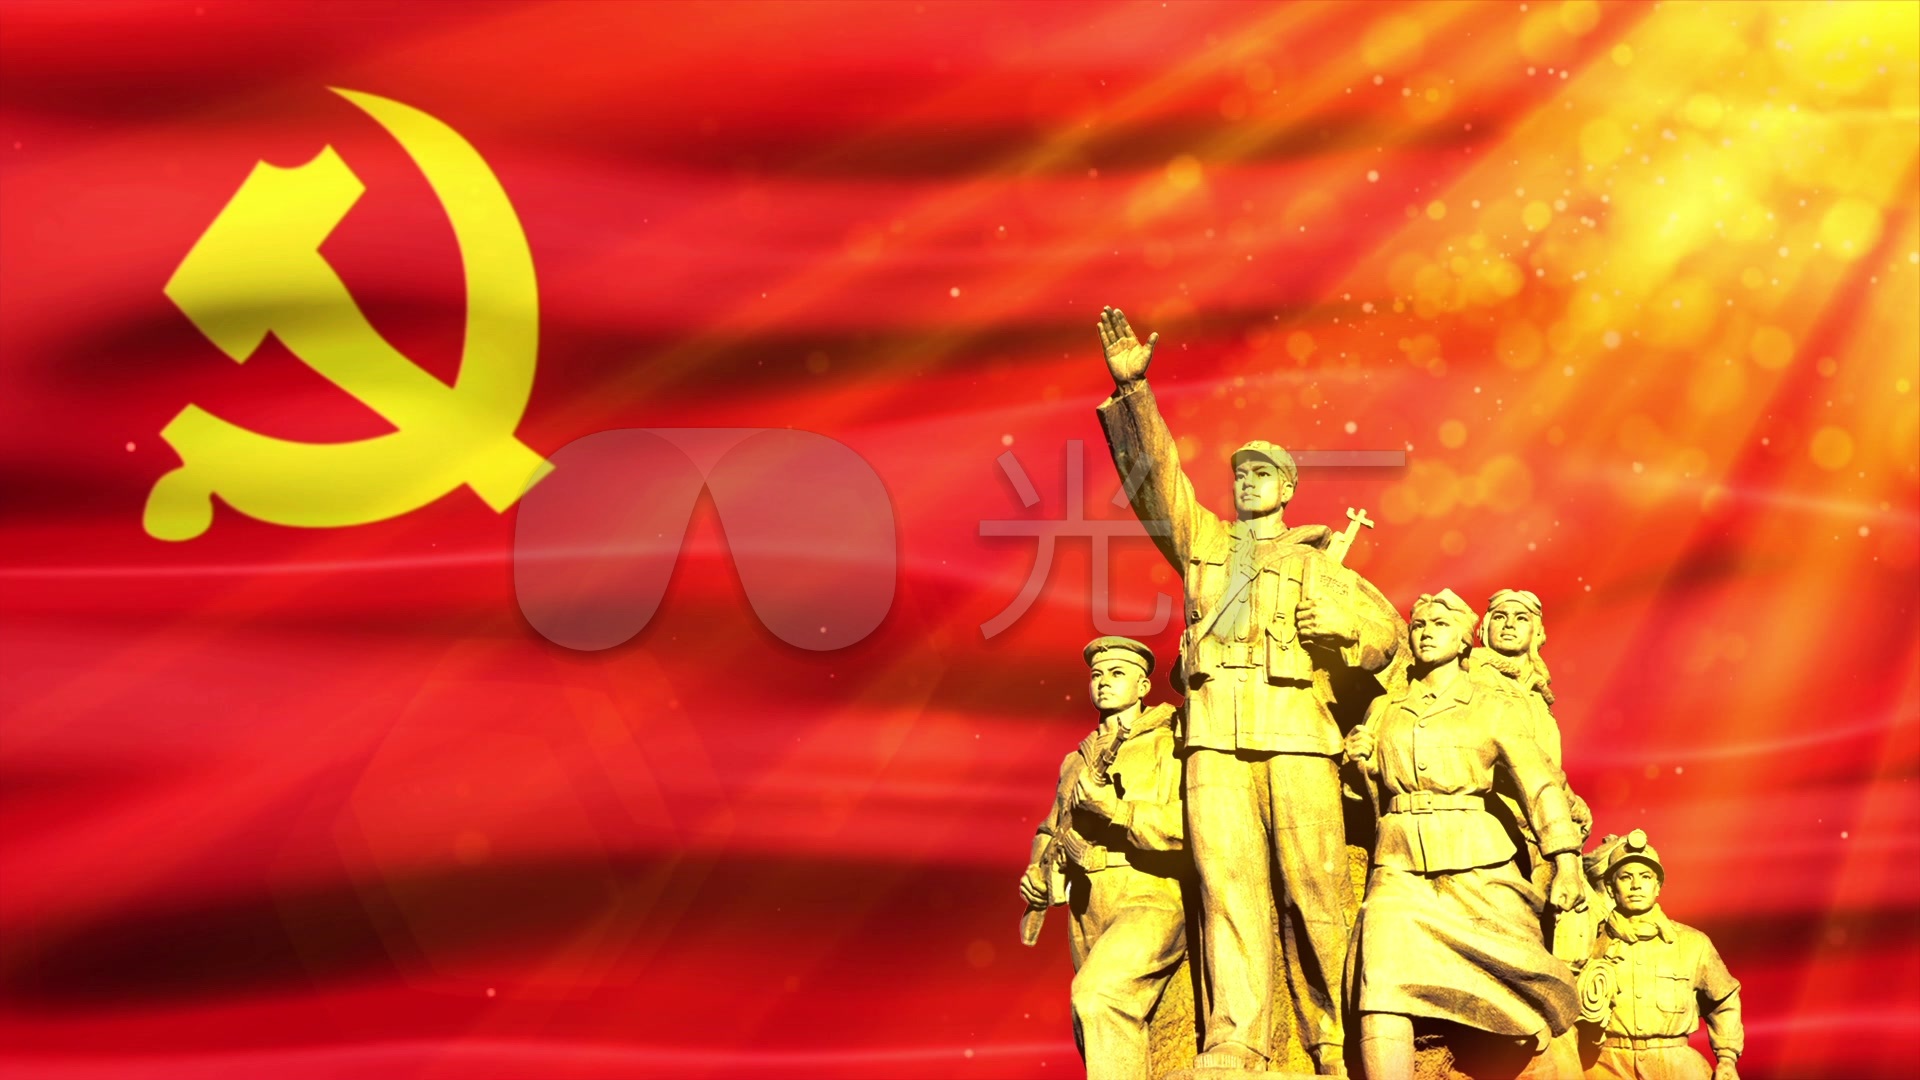 共产党党旗与人物雕像